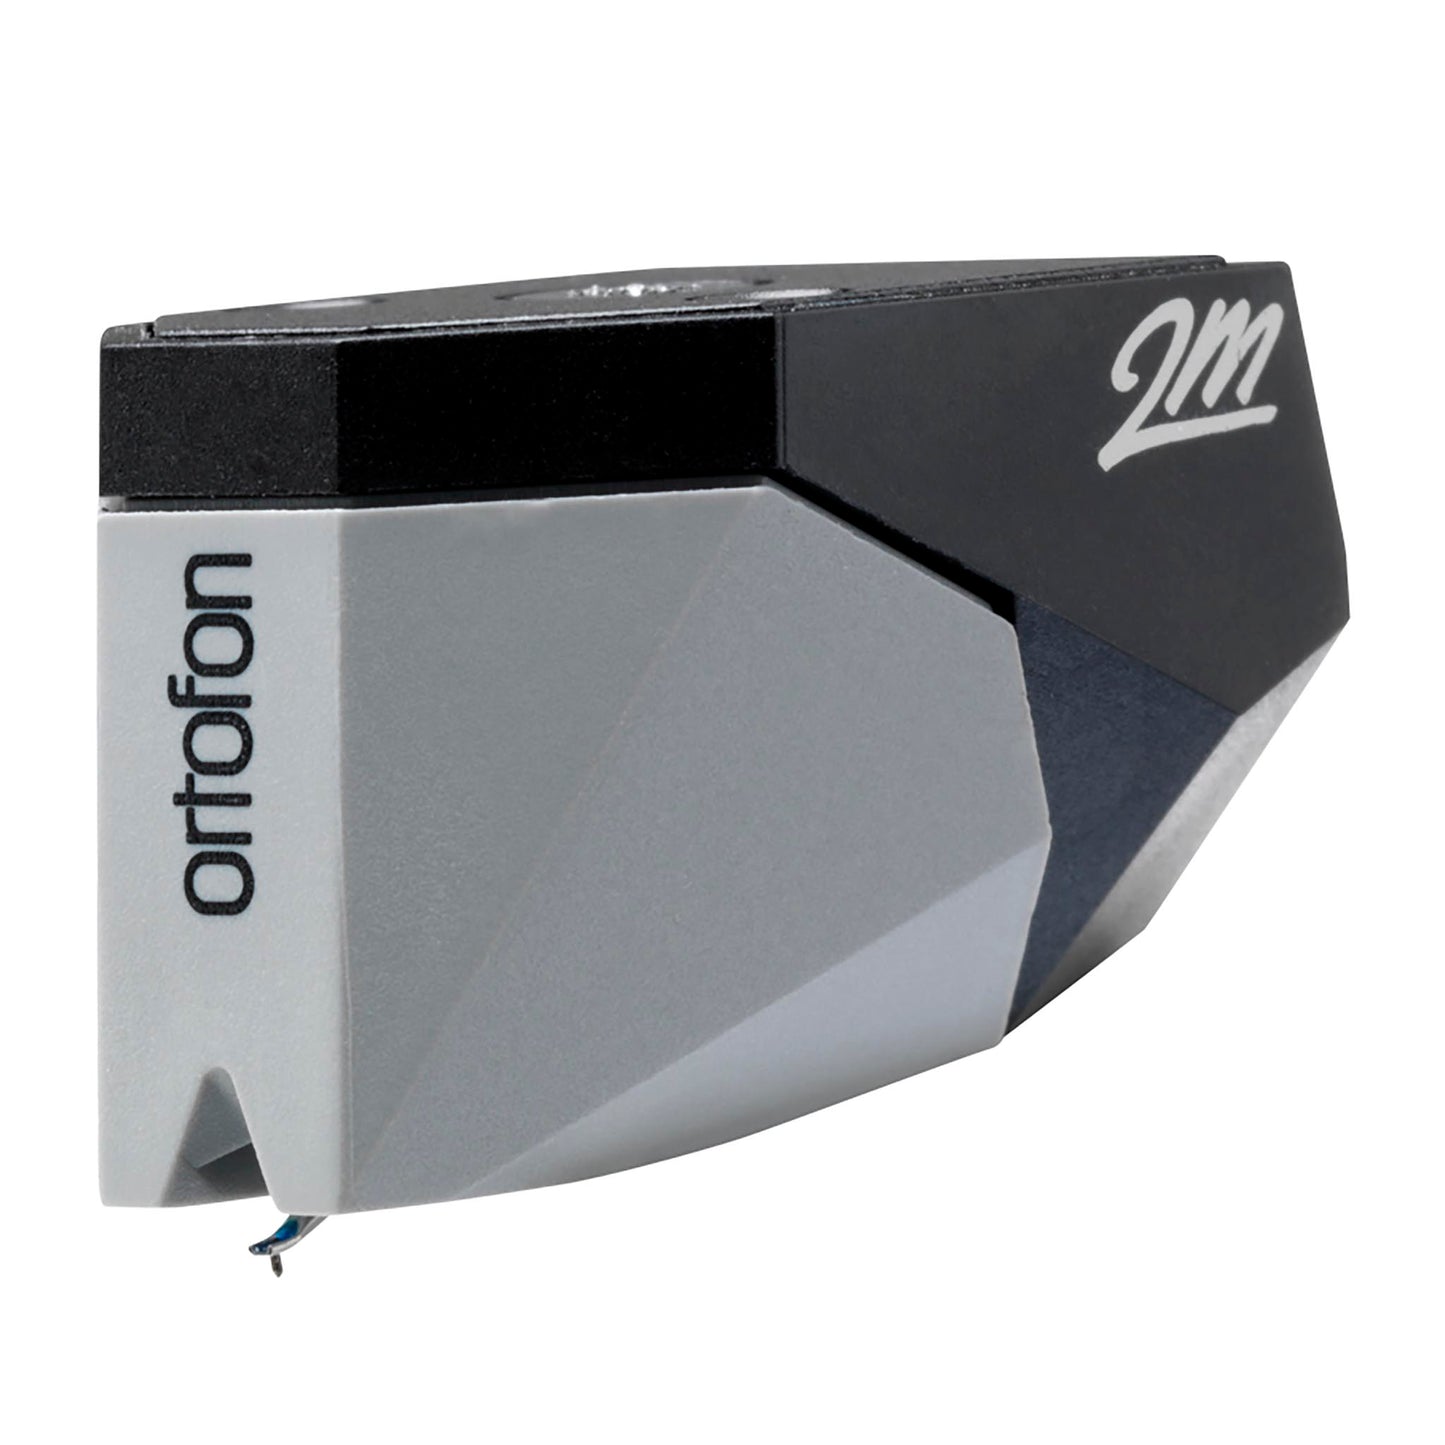 Ortofon 2M 78 RPM Moving Magnet Cartridge